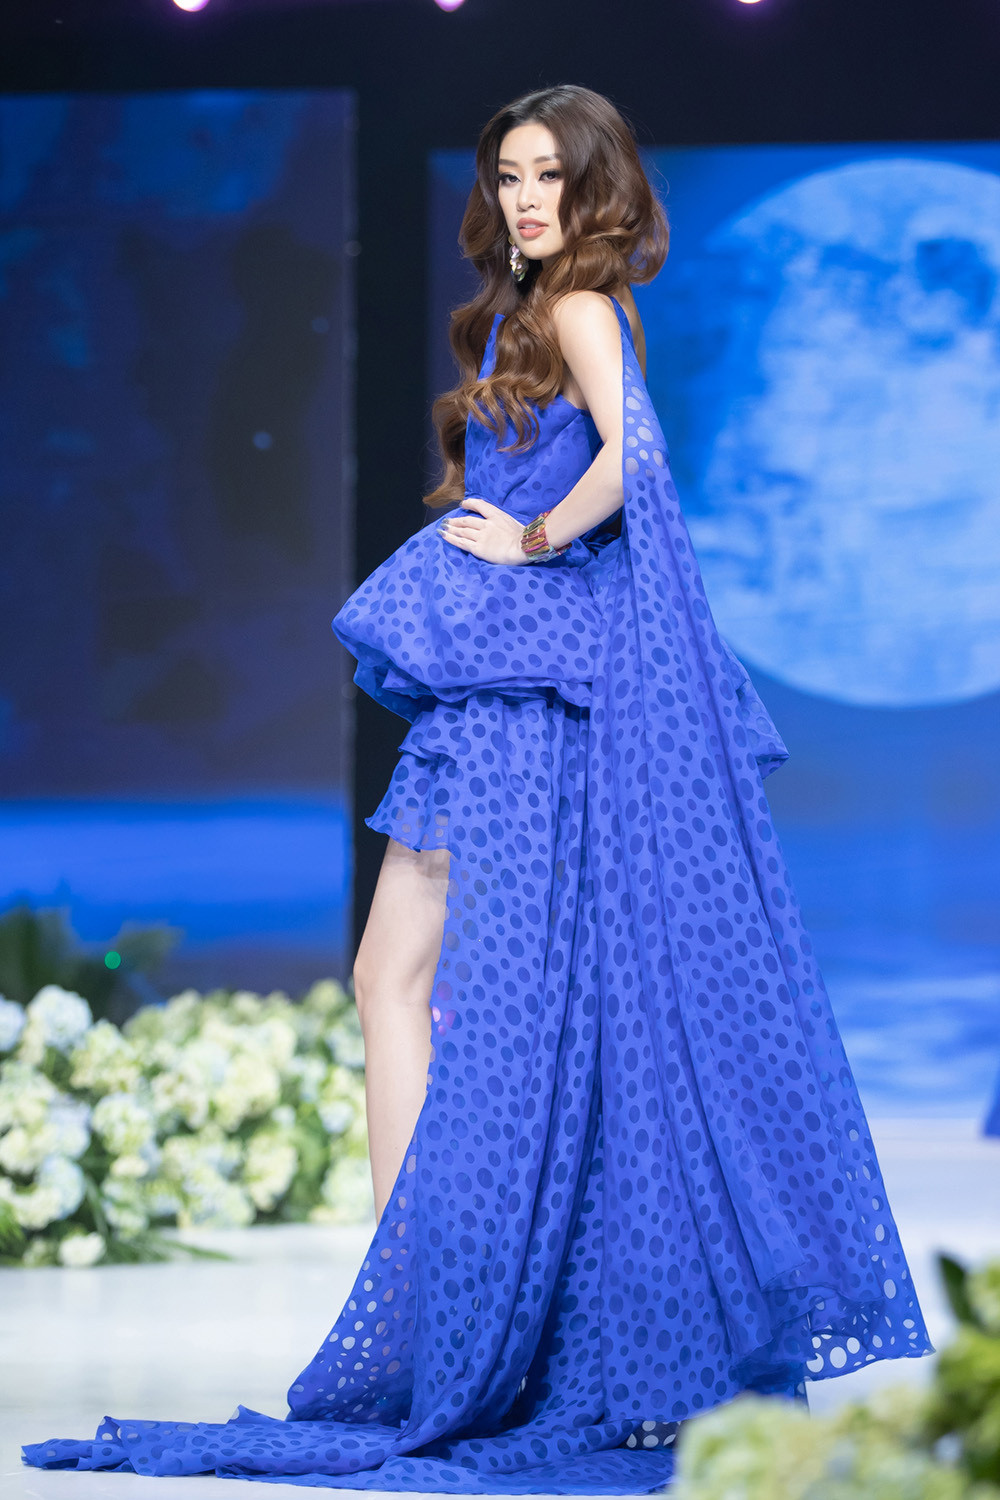 Hoa hậu Khánh Vân tái xuất sàn diễn thời trang với vị trí vedette - 4